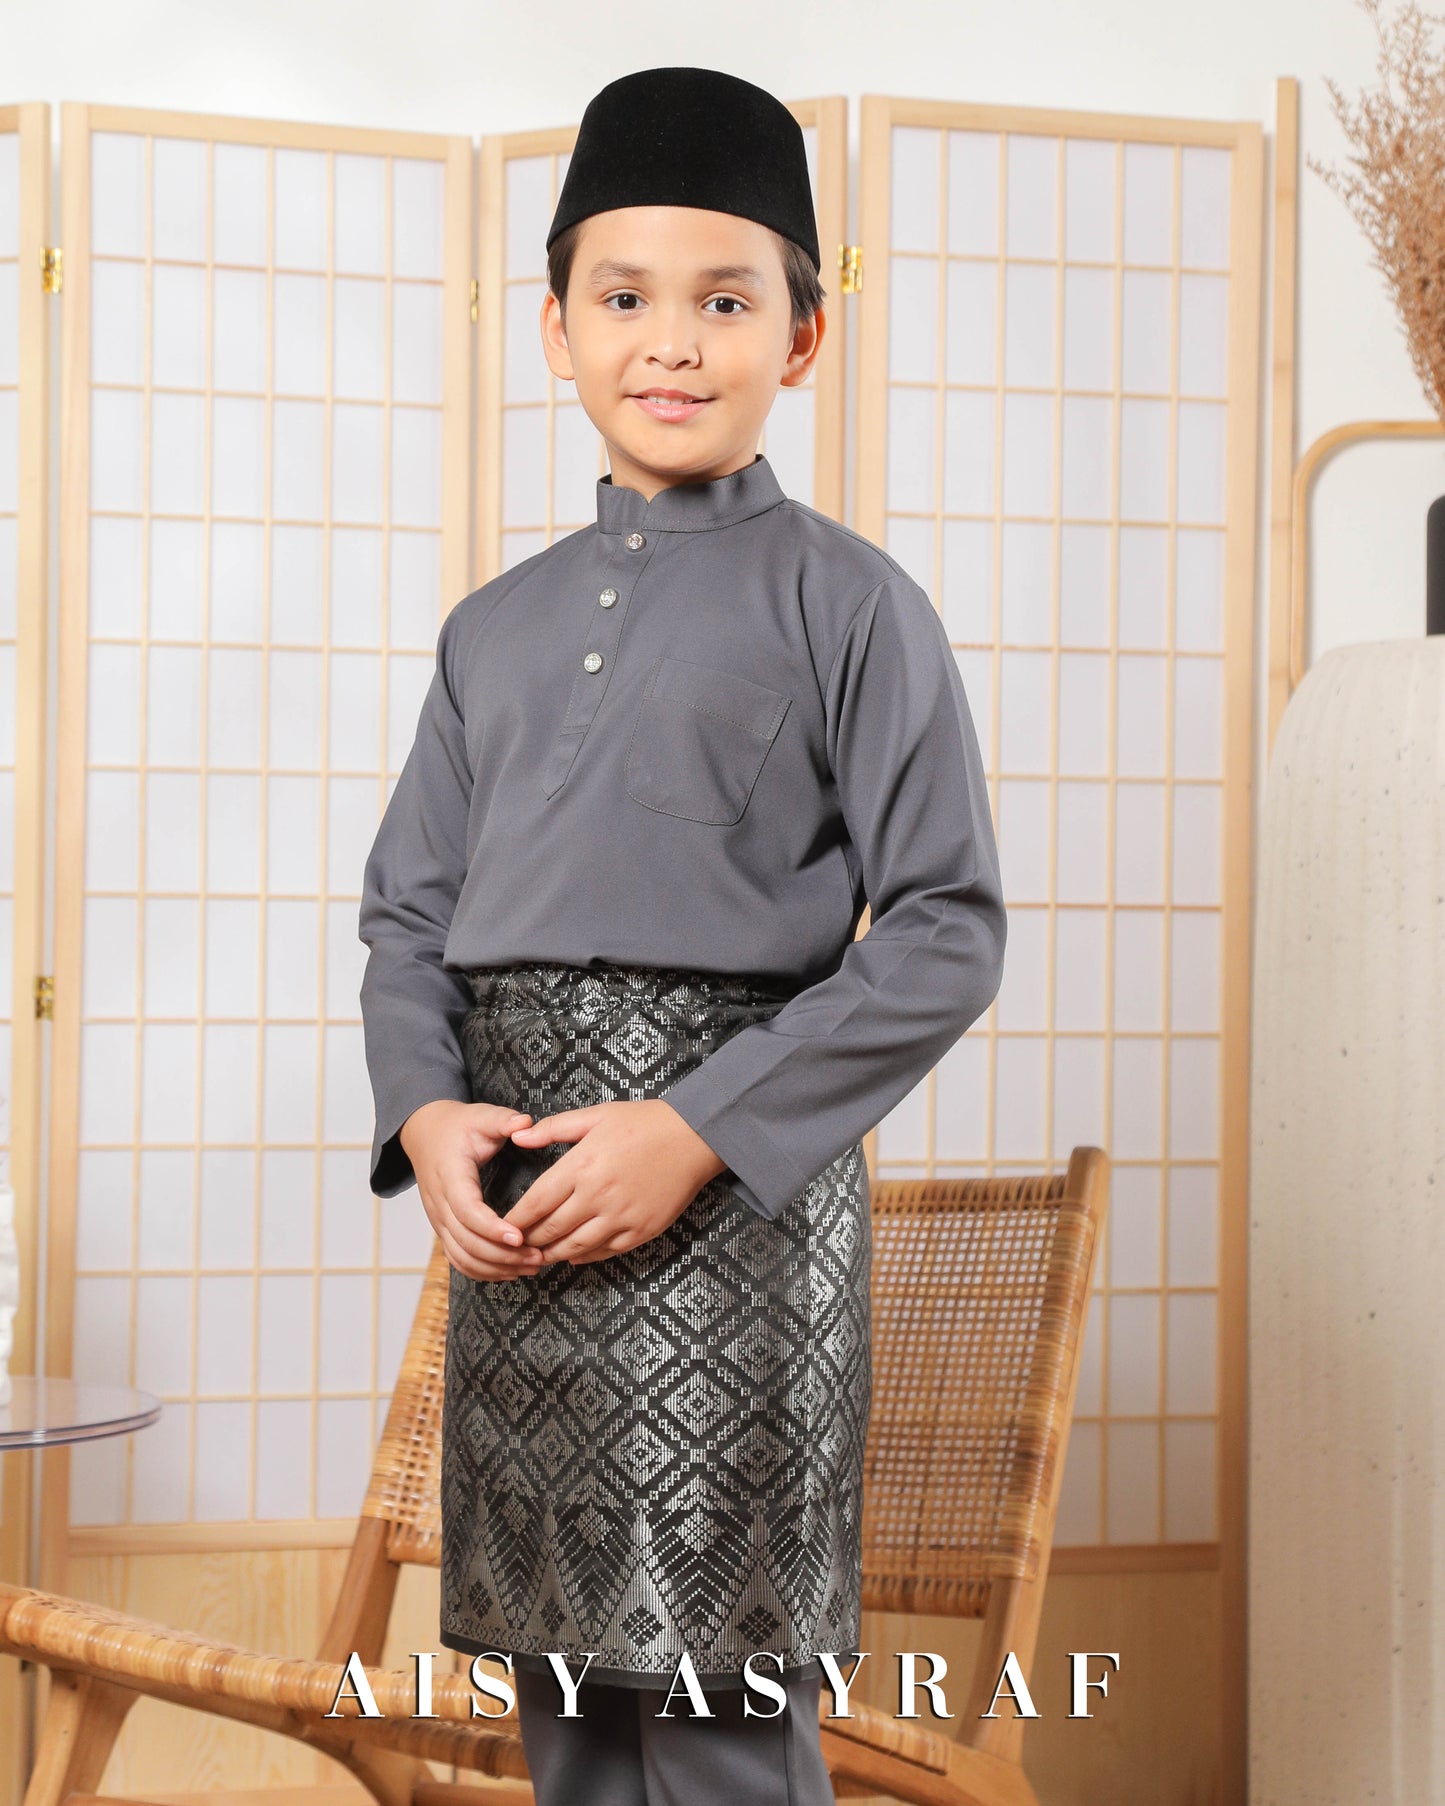 Baju Melayu Zaidan Kids - Dark Grey